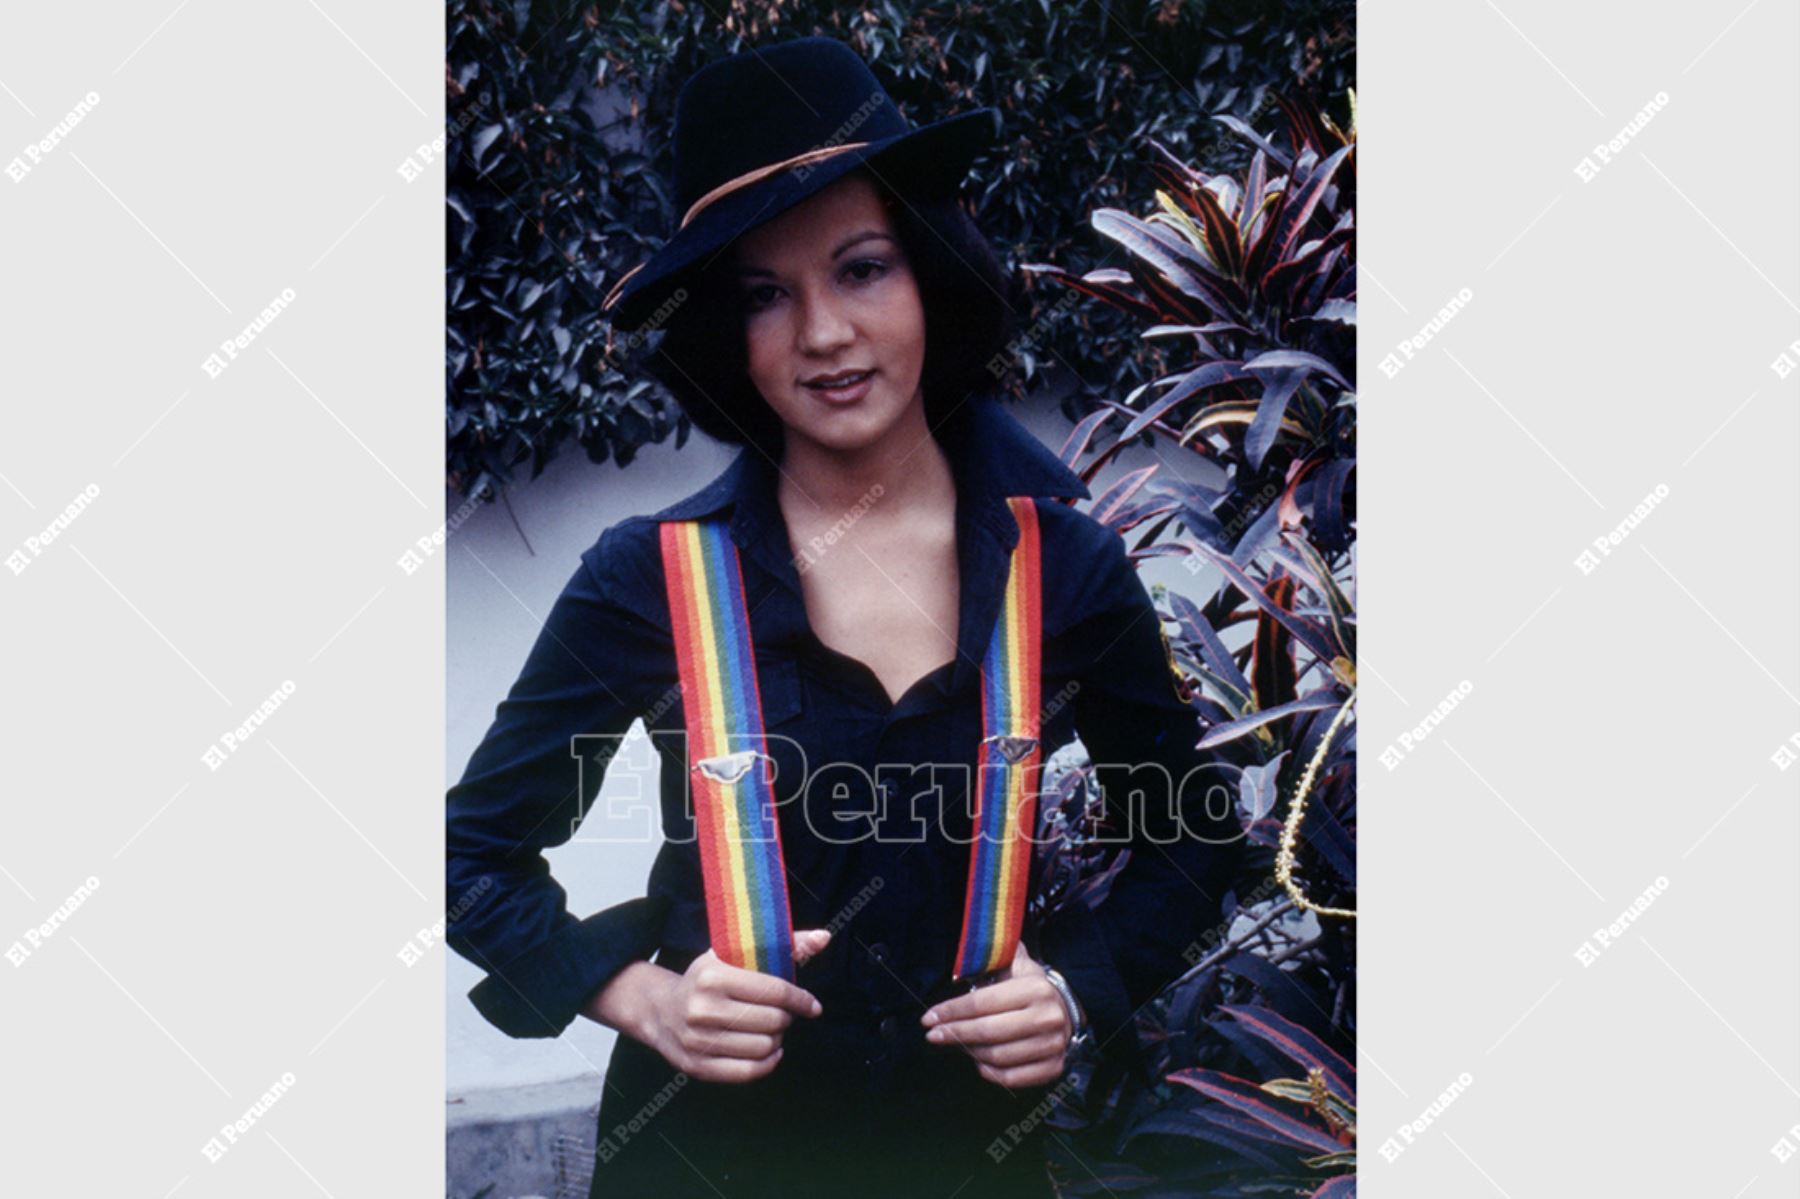 Lima - 24 agosto 1978 / Yola Polastri, animadora infantil y conductora del programa Hola Yola de América Televisión. Foto: Archivo Histórico de El Peruano / Rolando Ángeles